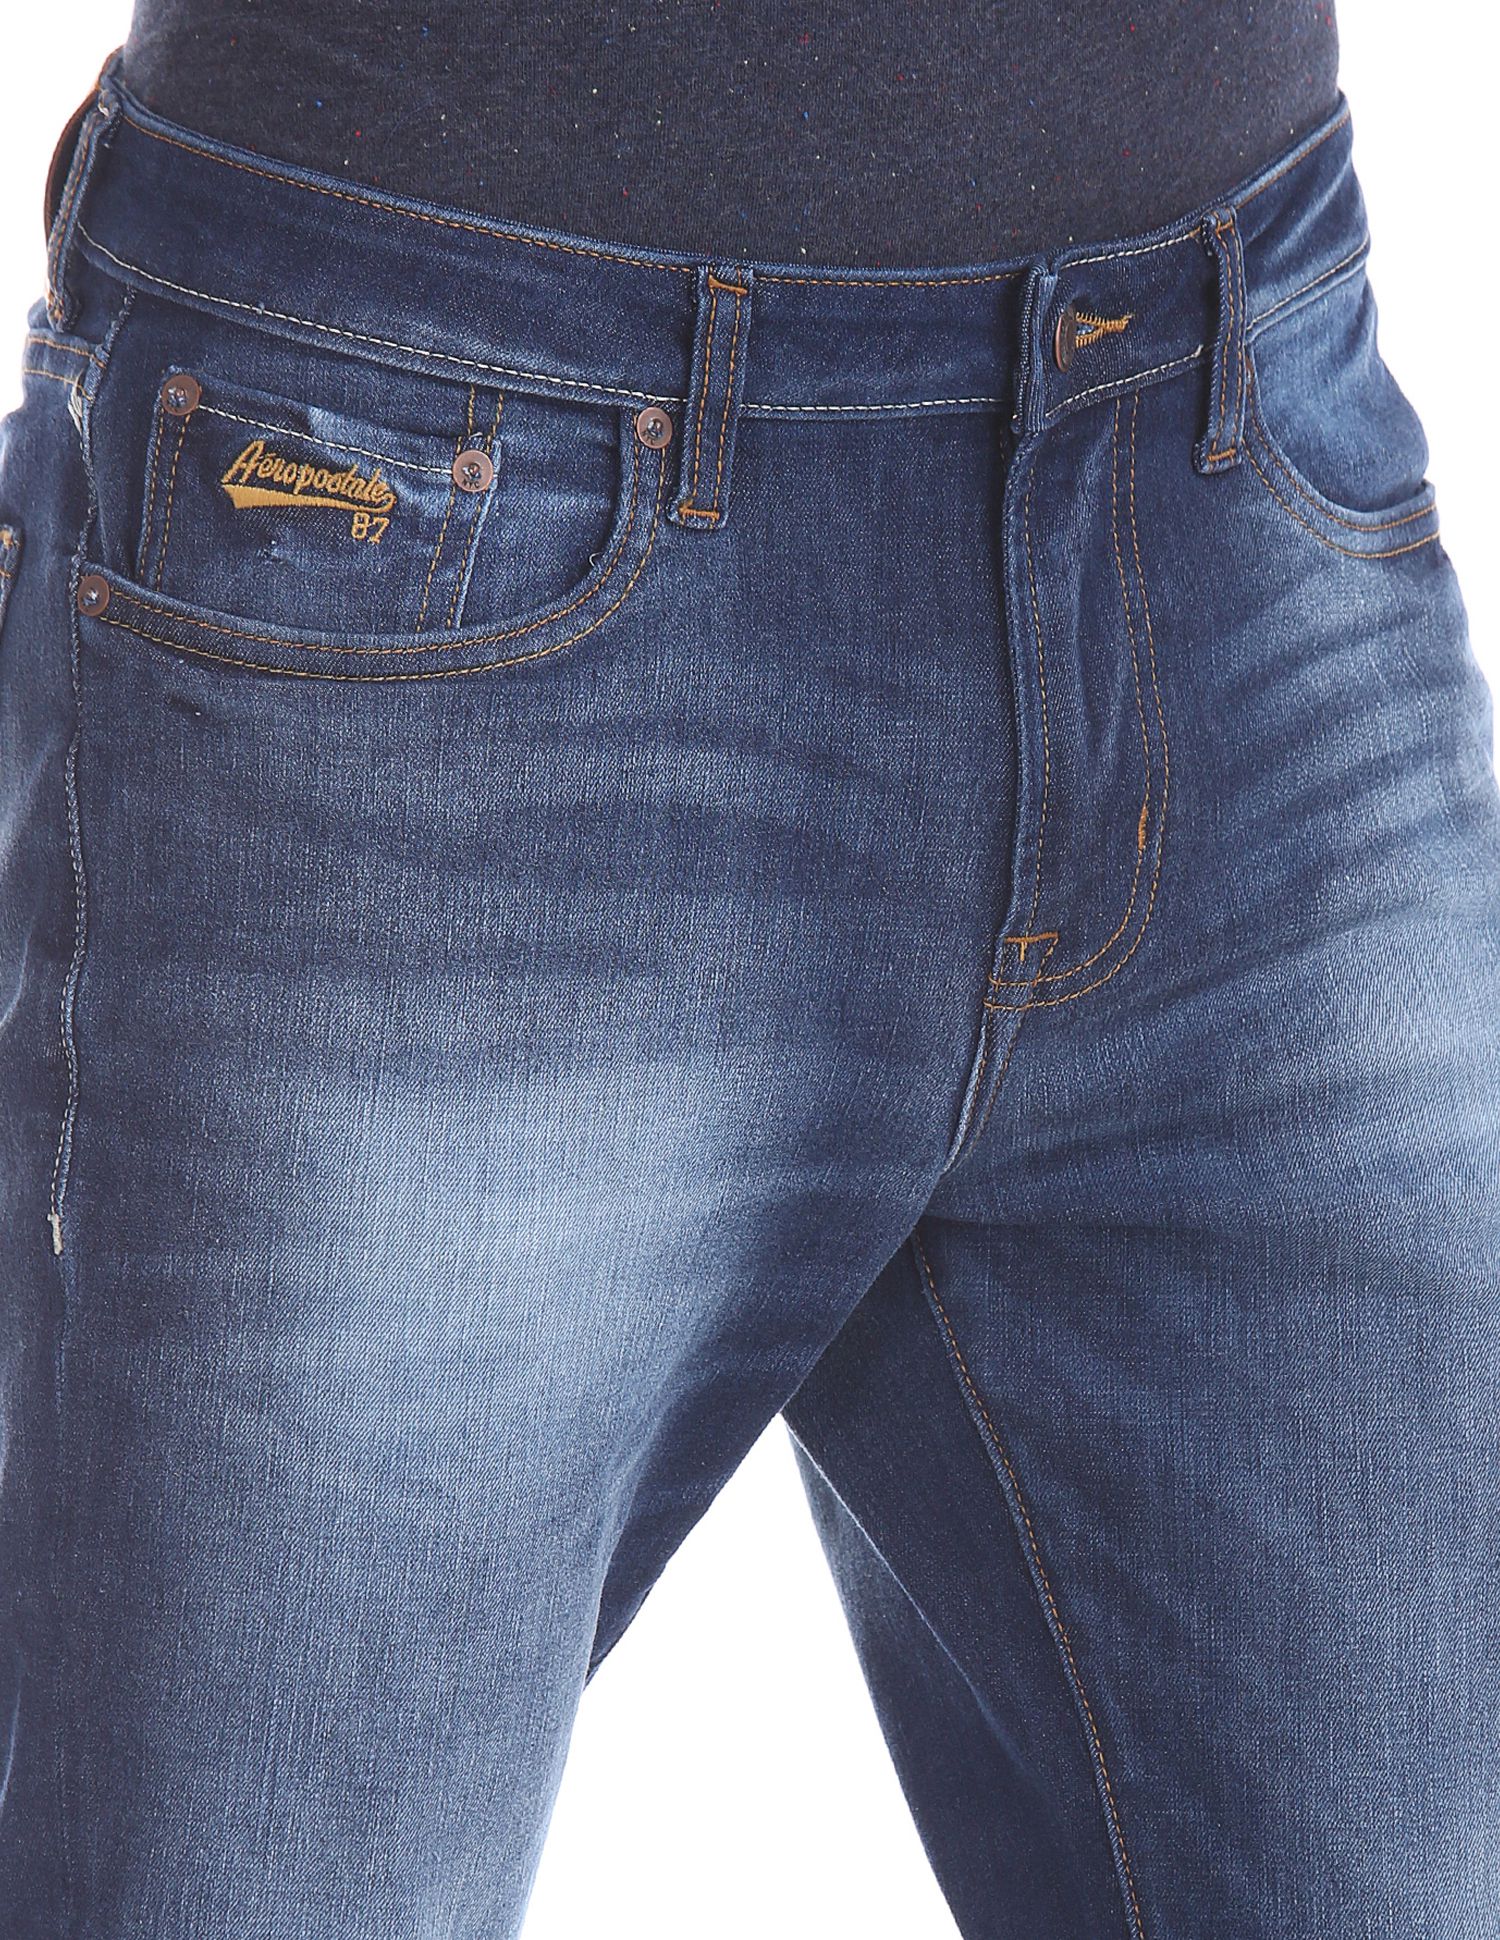 Aeropostale Blue Slim Jeans - Buy Aeropostale Blue Slim Jeans Online at ...